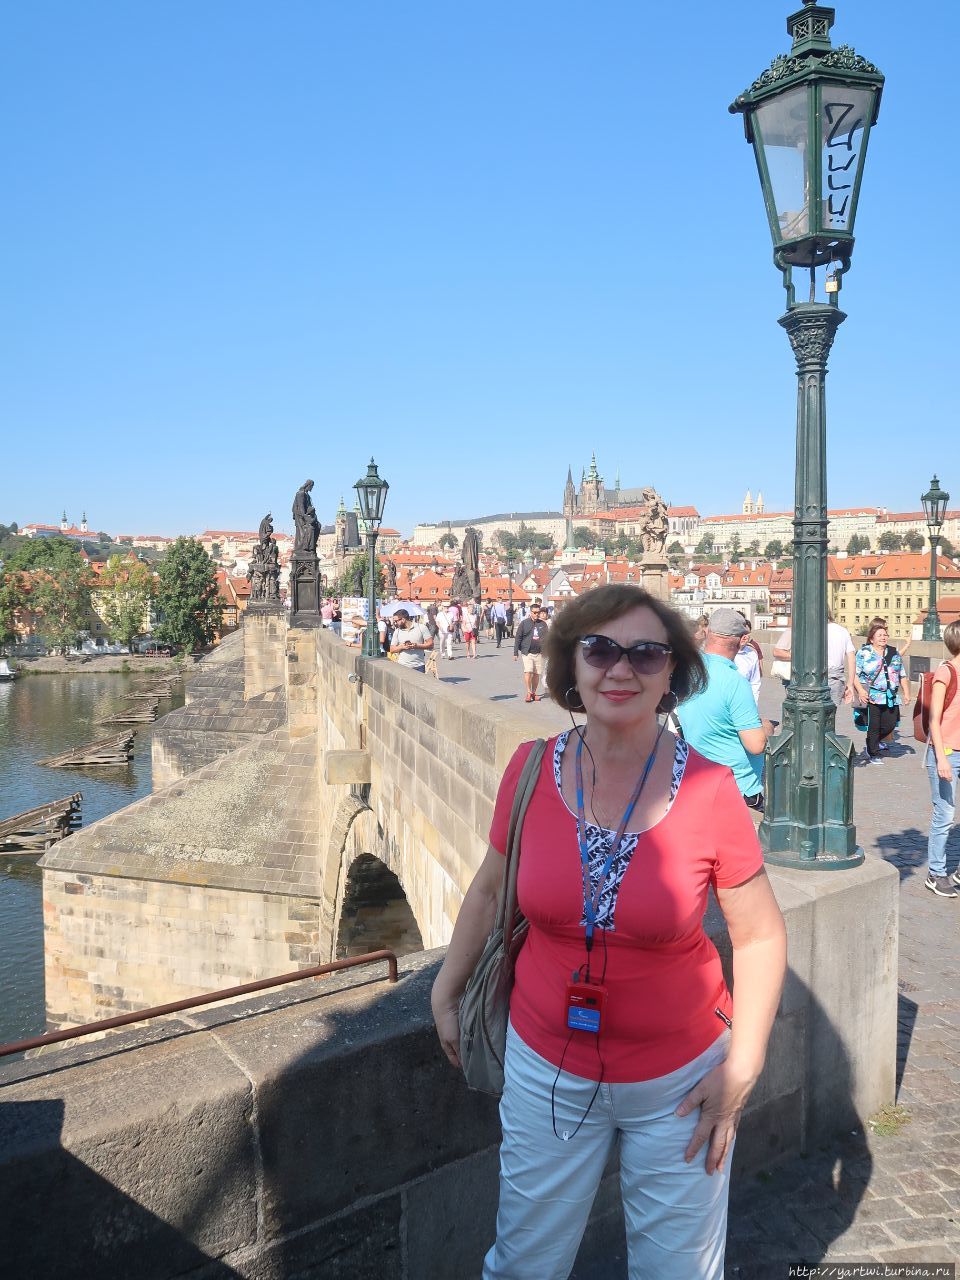 Фотография на память о Карловом мосте недалеко от Восточной мостовой башни в направлении к Пражскому граду. Прага, Чехия